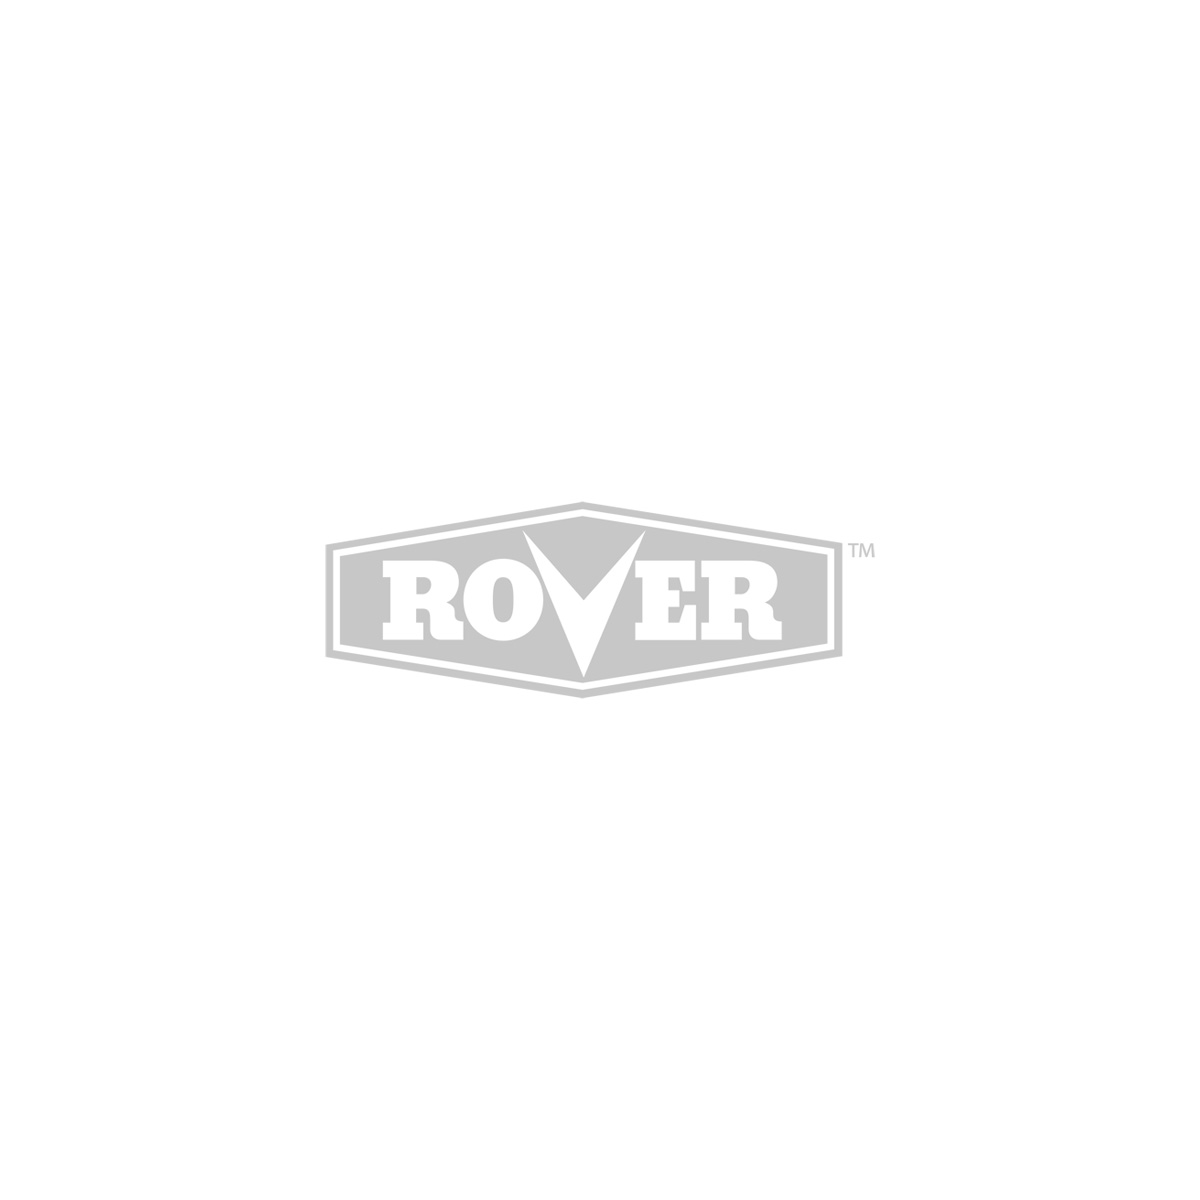 Rover 8 Ton Log Splitter